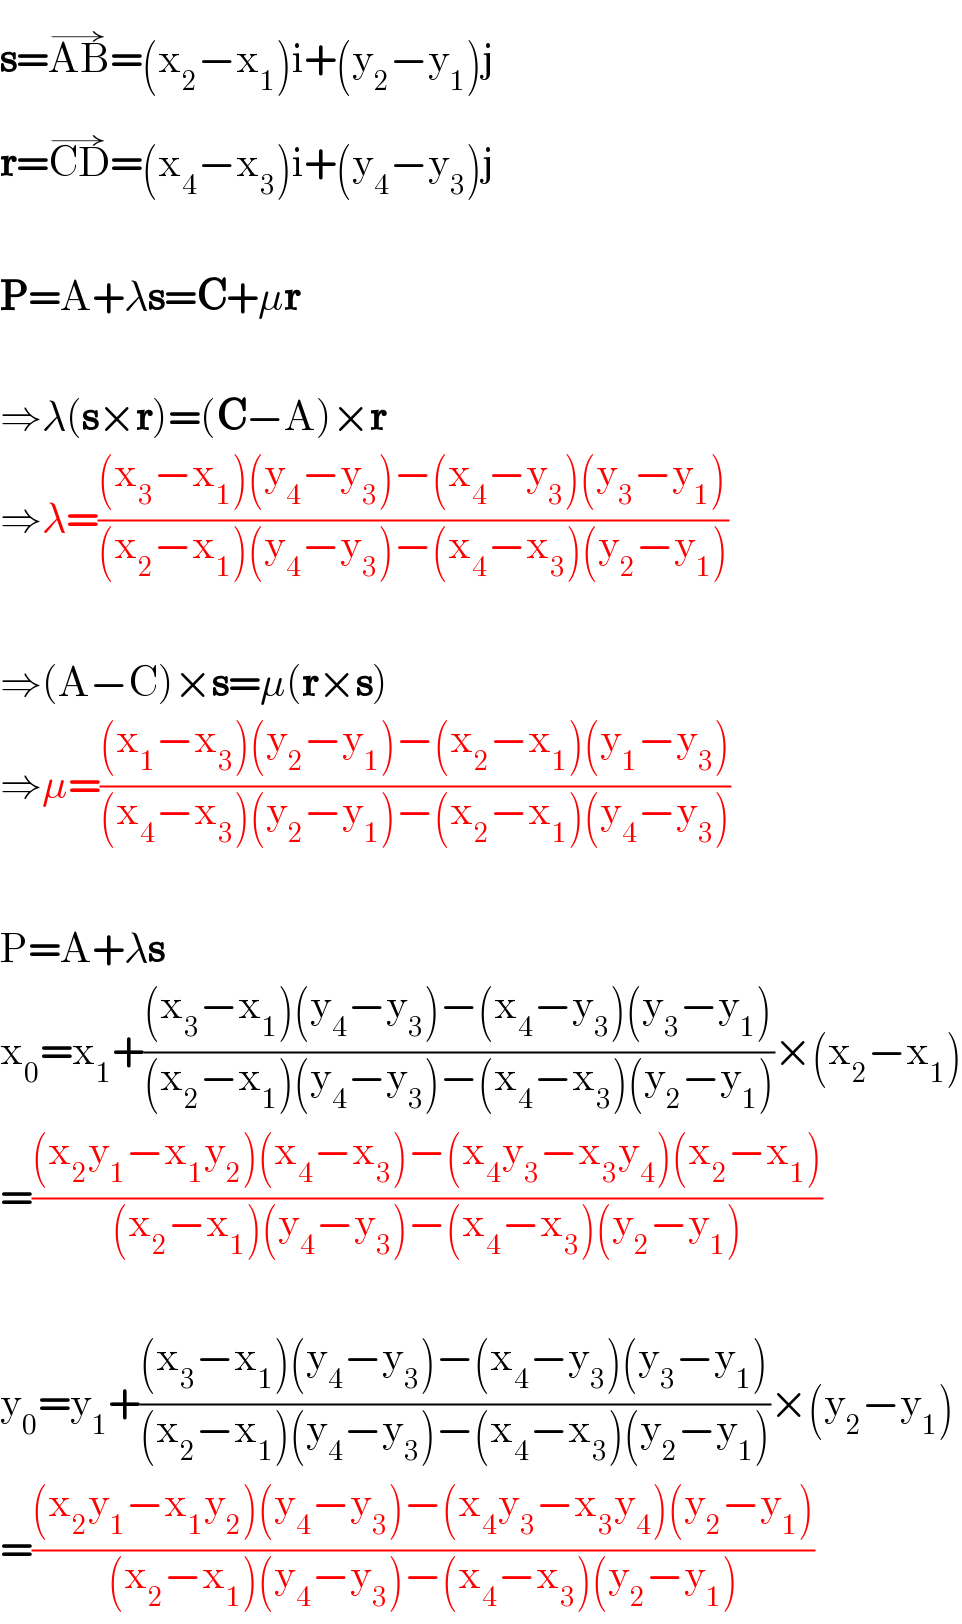 s=AB^(→) =(x_2 −x_1 )i+(y_2 −y_1 )j  r=CD^(→) =(x_4 −x_3 )i+(y_4 −y_3 )j    P=A+λs=C+μr    ⇒λ(s×r)=(C−A)×r  ⇒λ=(((x_3 −x_1 )(y_4 −y_3 )−(x_4 −y_3 )(y_3 −y_1 ))/((x_2 −x_1 )(y_4 −y_3 )−(x_4 −x_3 )(y_2 −y_1 )))    ⇒(A−C)×s=μ(r×s)  ⇒μ=(((x_1 −x_3 )(y_2 −y_1 )−(x_2 −x_1 )(y_1 −y_3 ))/((x_4 −x_3 )(y_2 −y_1 )−(x_2 −x_1 )(y_4 −y_3 )))    P=A+λs  x_0 =x_1 +(((x_3 −x_1 )(y_4 −y_3 )−(x_4 −y_3 )(y_3 −y_1 ))/((x_2 −x_1 )(y_4 −y_3 )−(x_4 −x_3 )(y_2 −y_1 )))×(x_2 −x_1 )  =(((x_2 y_1 −x_1 y_2 )(x_4 −x_3 )−(x_4 y_3 −x_3 y_4 )(x_2 −x_1 ))/((x_2 −x_1 )(y_4 −y_3 )−(x_4 −x_3 )(y_2 −y_1 )))    y_0 =y_1 +(((x_3 −x_1 )(y_4 −y_3 )−(x_4 −y_3 )(y_3 −y_1 ))/((x_2 −x_1 )(y_4 −y_3 )−(x_4 −x_3 )(y_2 −y_1 )))×(y_2 −y_1 )  =(((x_2 y_1 −x_1 y_2 )(y_4 −y_3 )−(x_4 y_3 −x_3 y_4 )(y_2 −y_1 ))/((x_2 −x_1 )(y_4 −y_3 )−(x_4 −x_3 )(y_2 −y_1 )))  